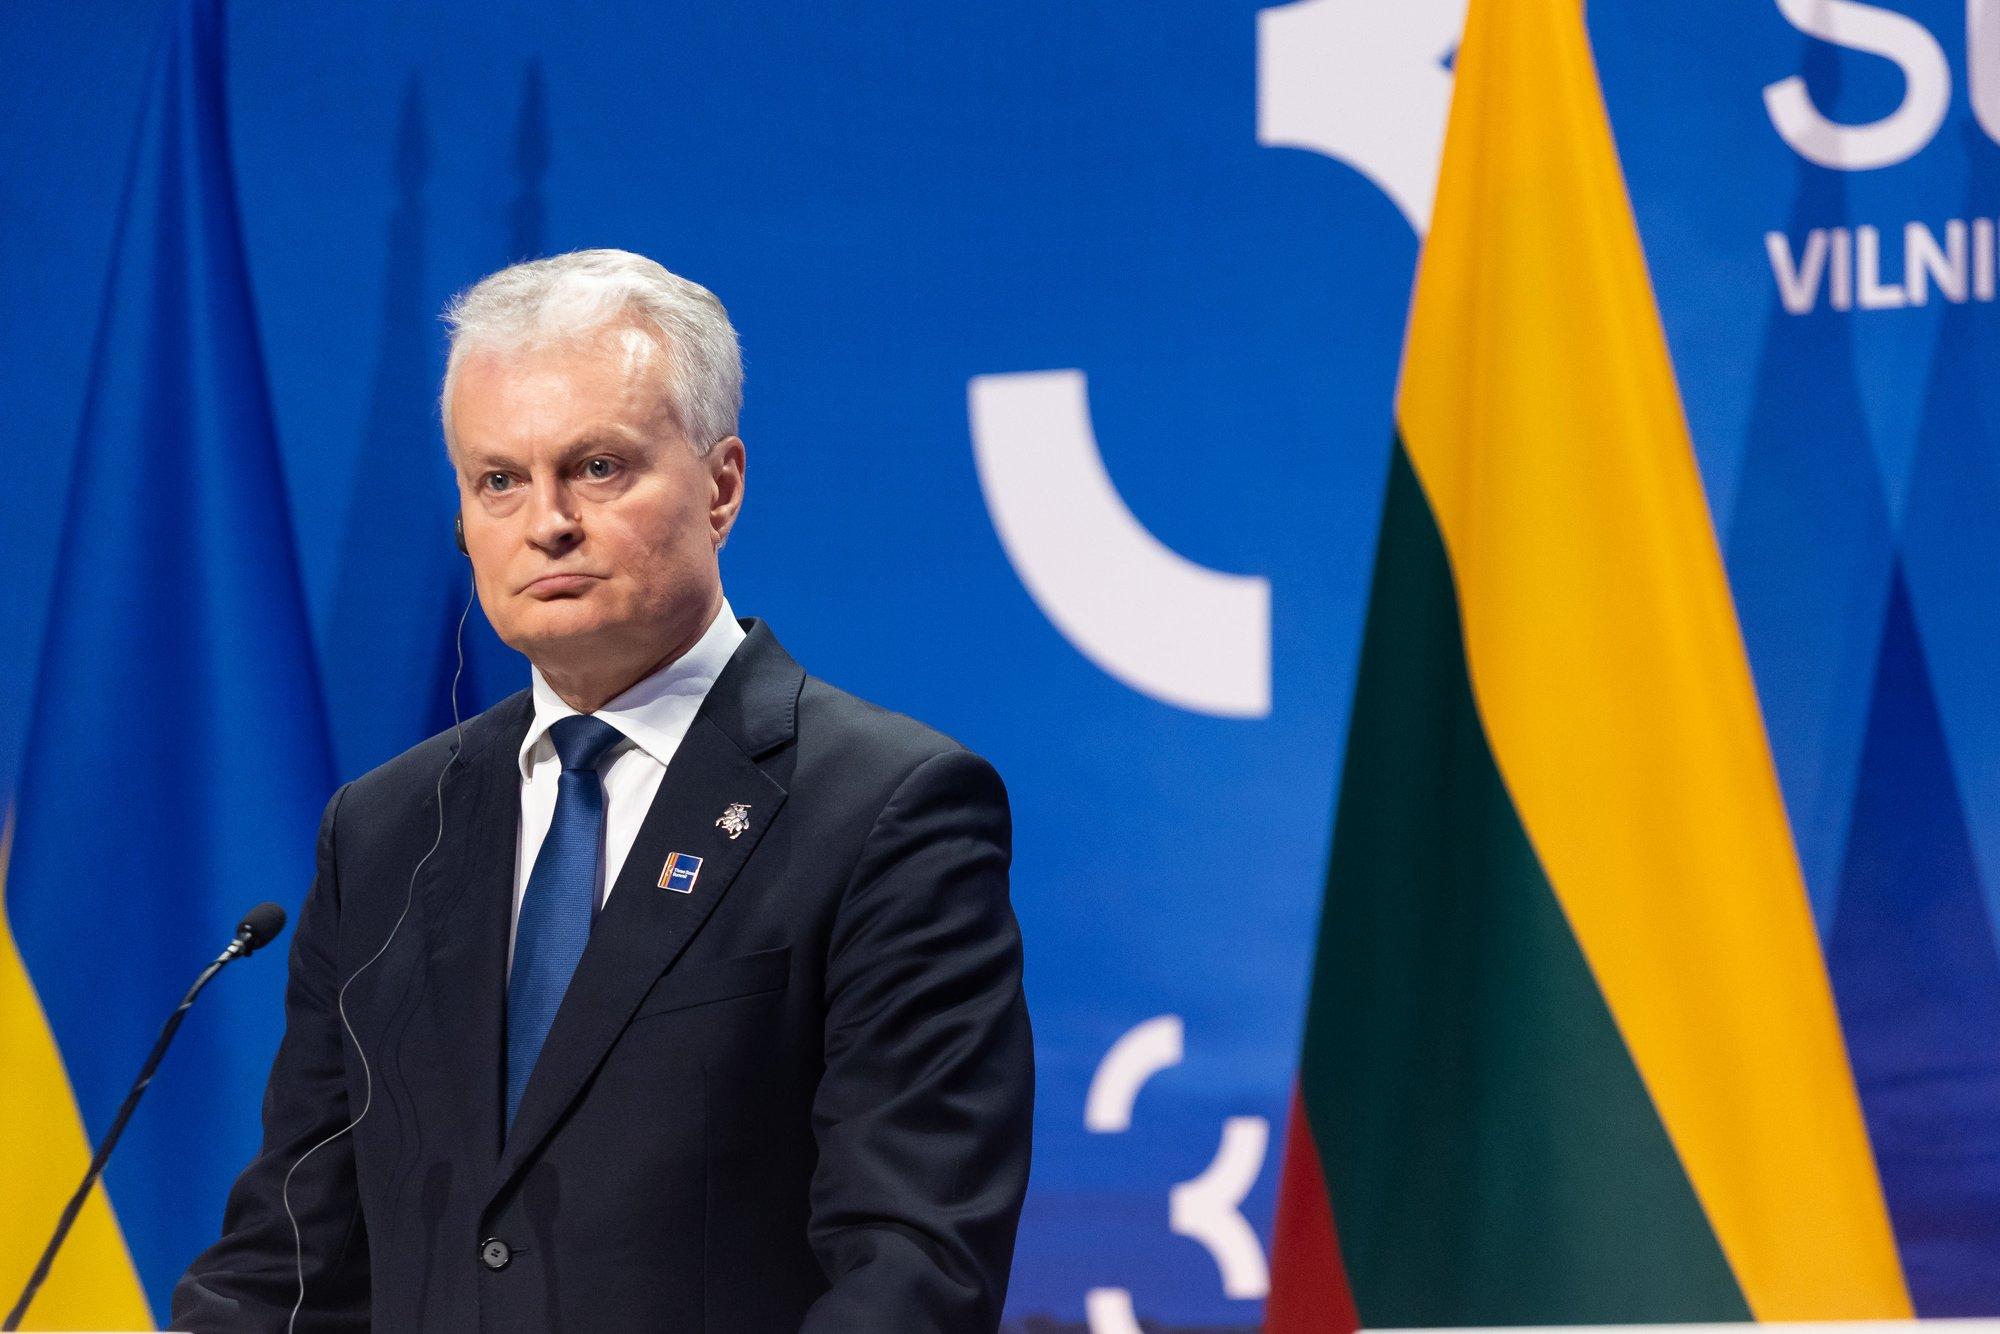 Президент Литвы: повышение НДС не является подходящим инструментом для увеличения финансирования обороны